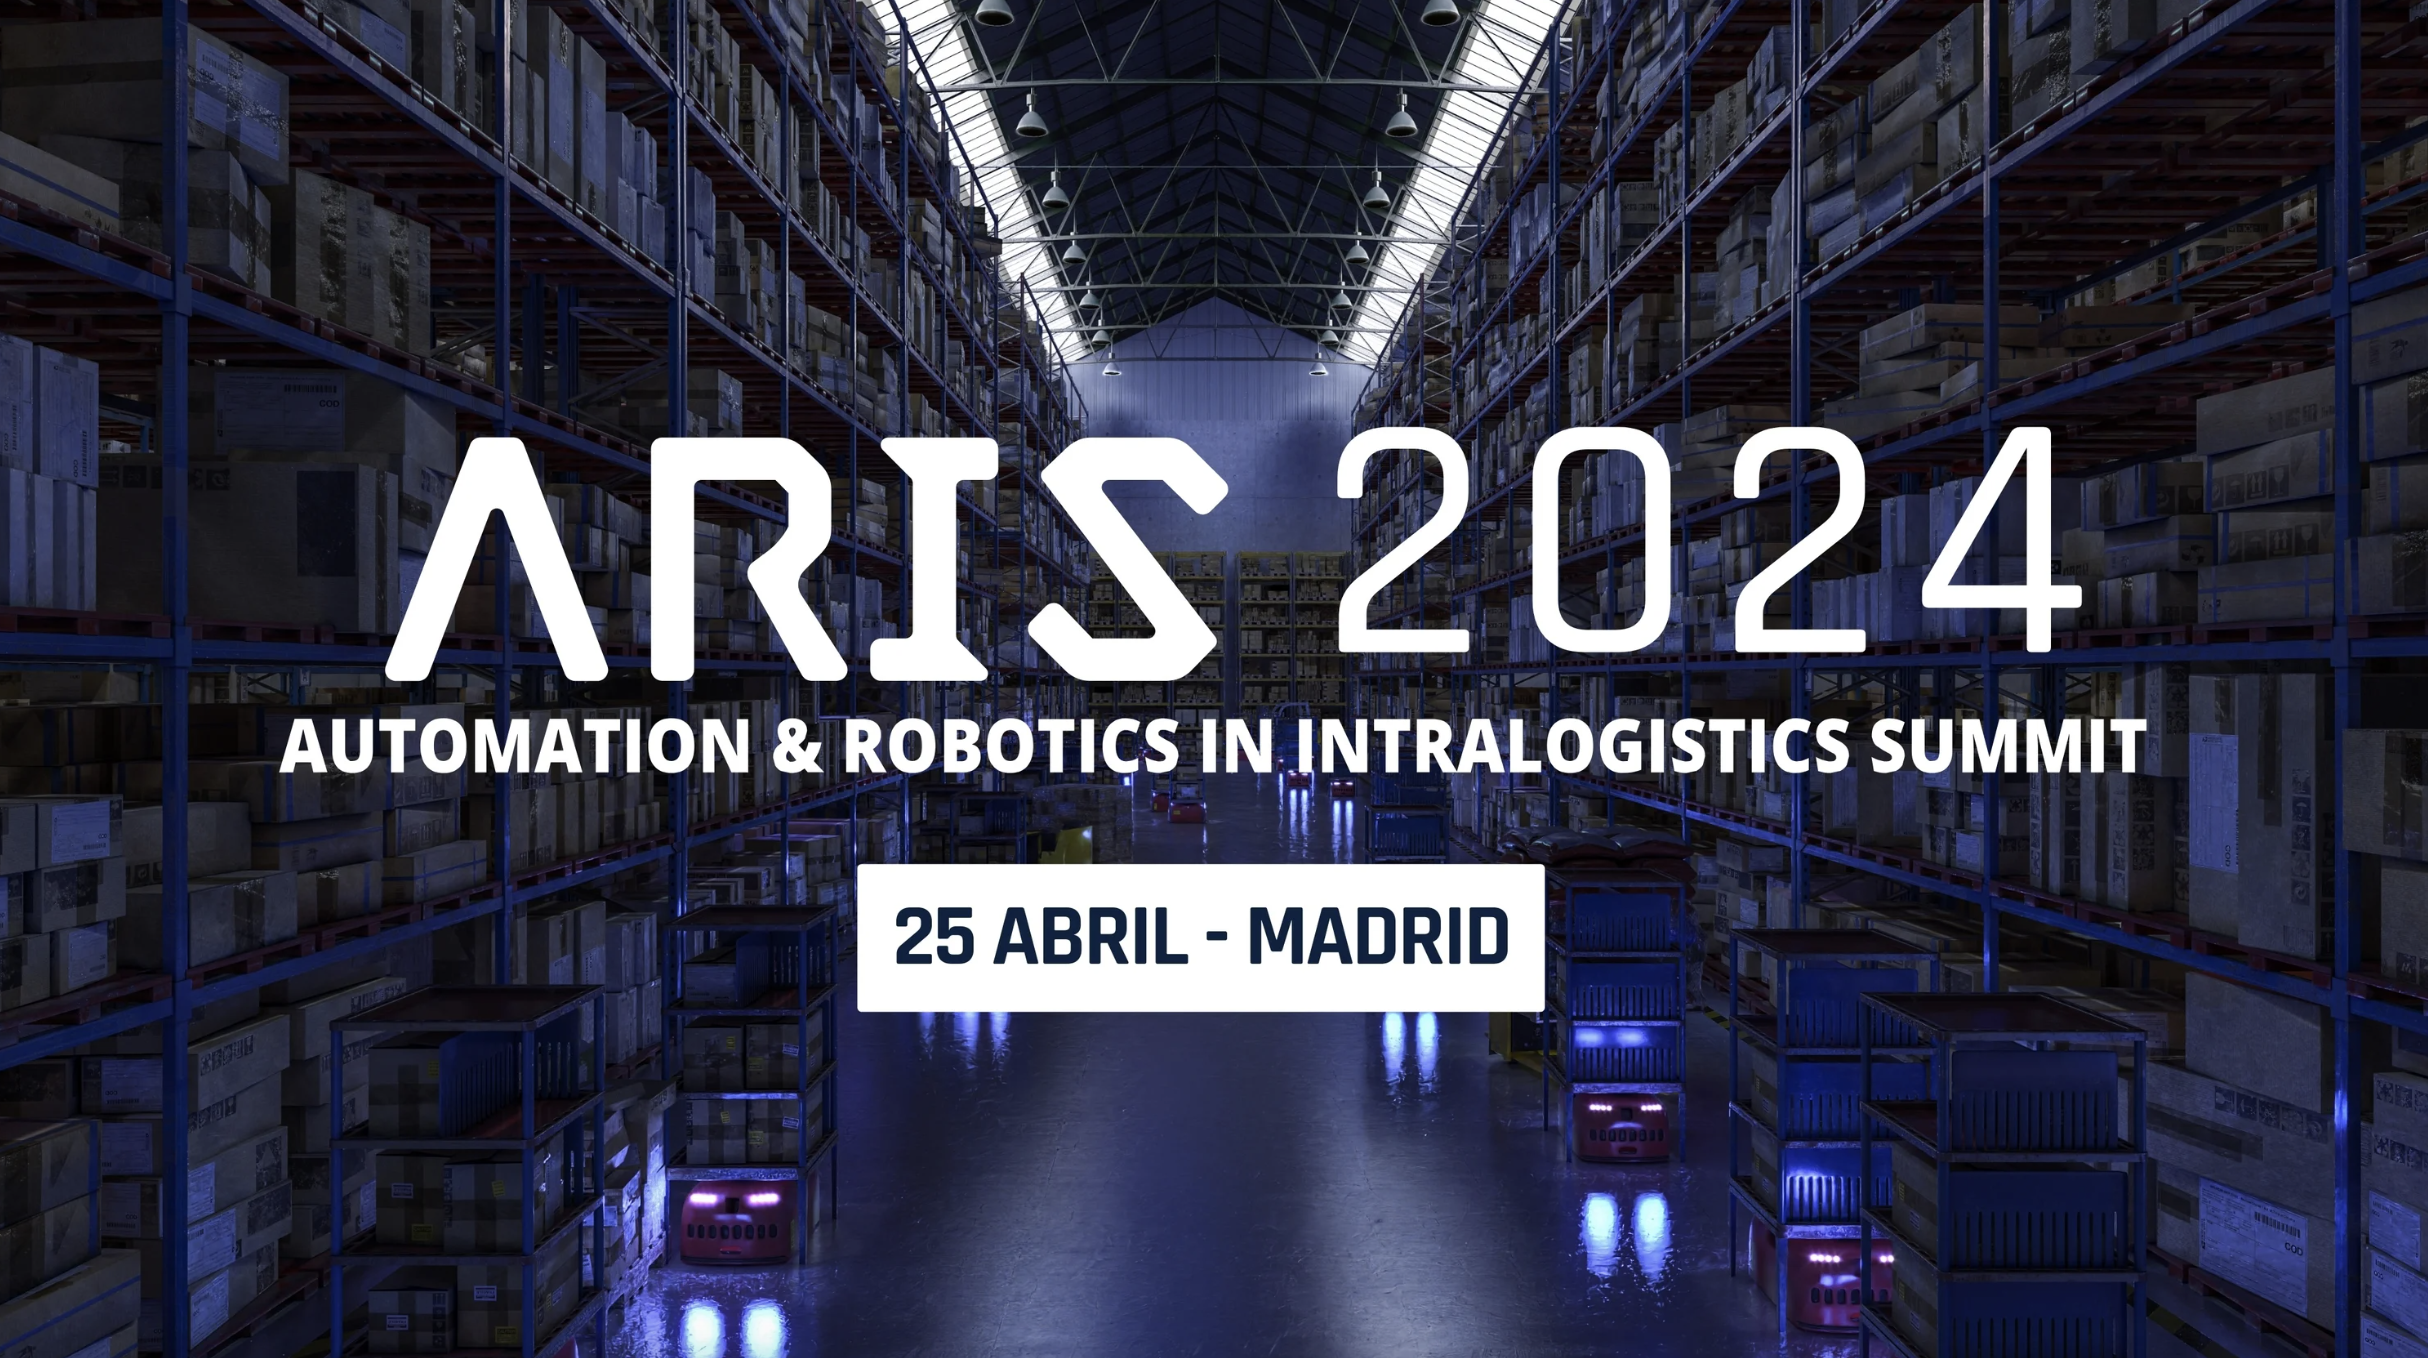 Banner promocional de ARIS 2024 mostrando un almacén automatizado con estanterías altas y vehículos de guiado automático en el suelo, con el texto 'ARIS 2024 AUTOMATION & ROBOTICS IN INTRALOGISTICS SUMMIT - 25 ABRIL - MADRID' superpuesto.